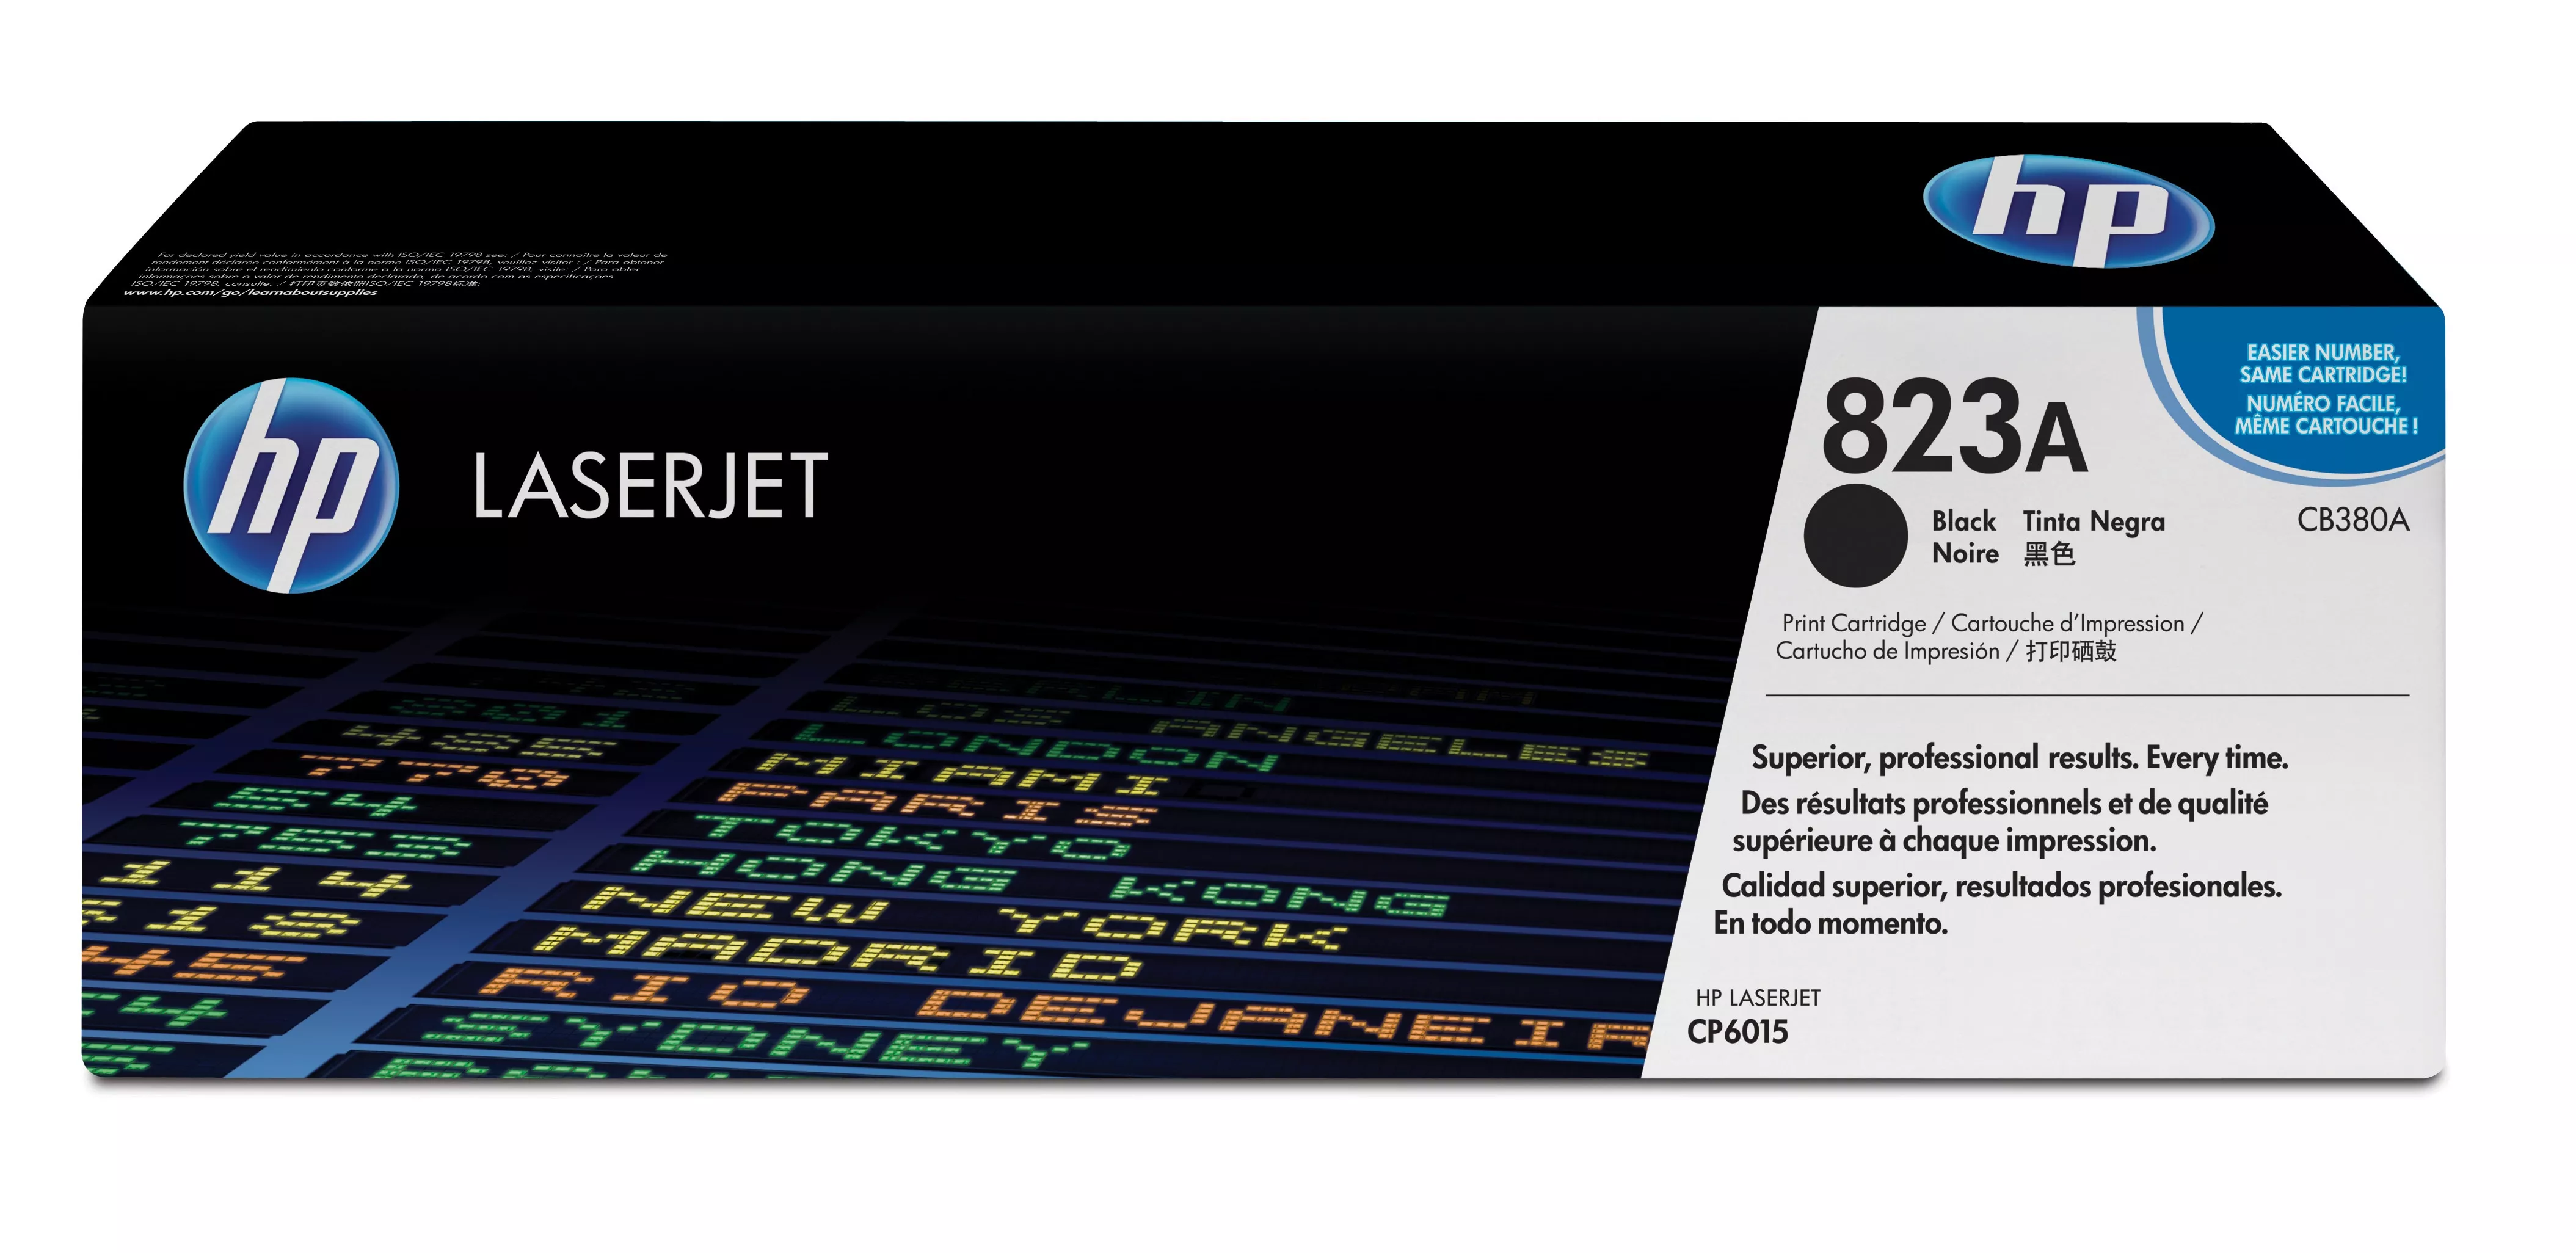 Achat HP 823A original Colour LaserJet Toner cartridge CB380A au meilleur prix